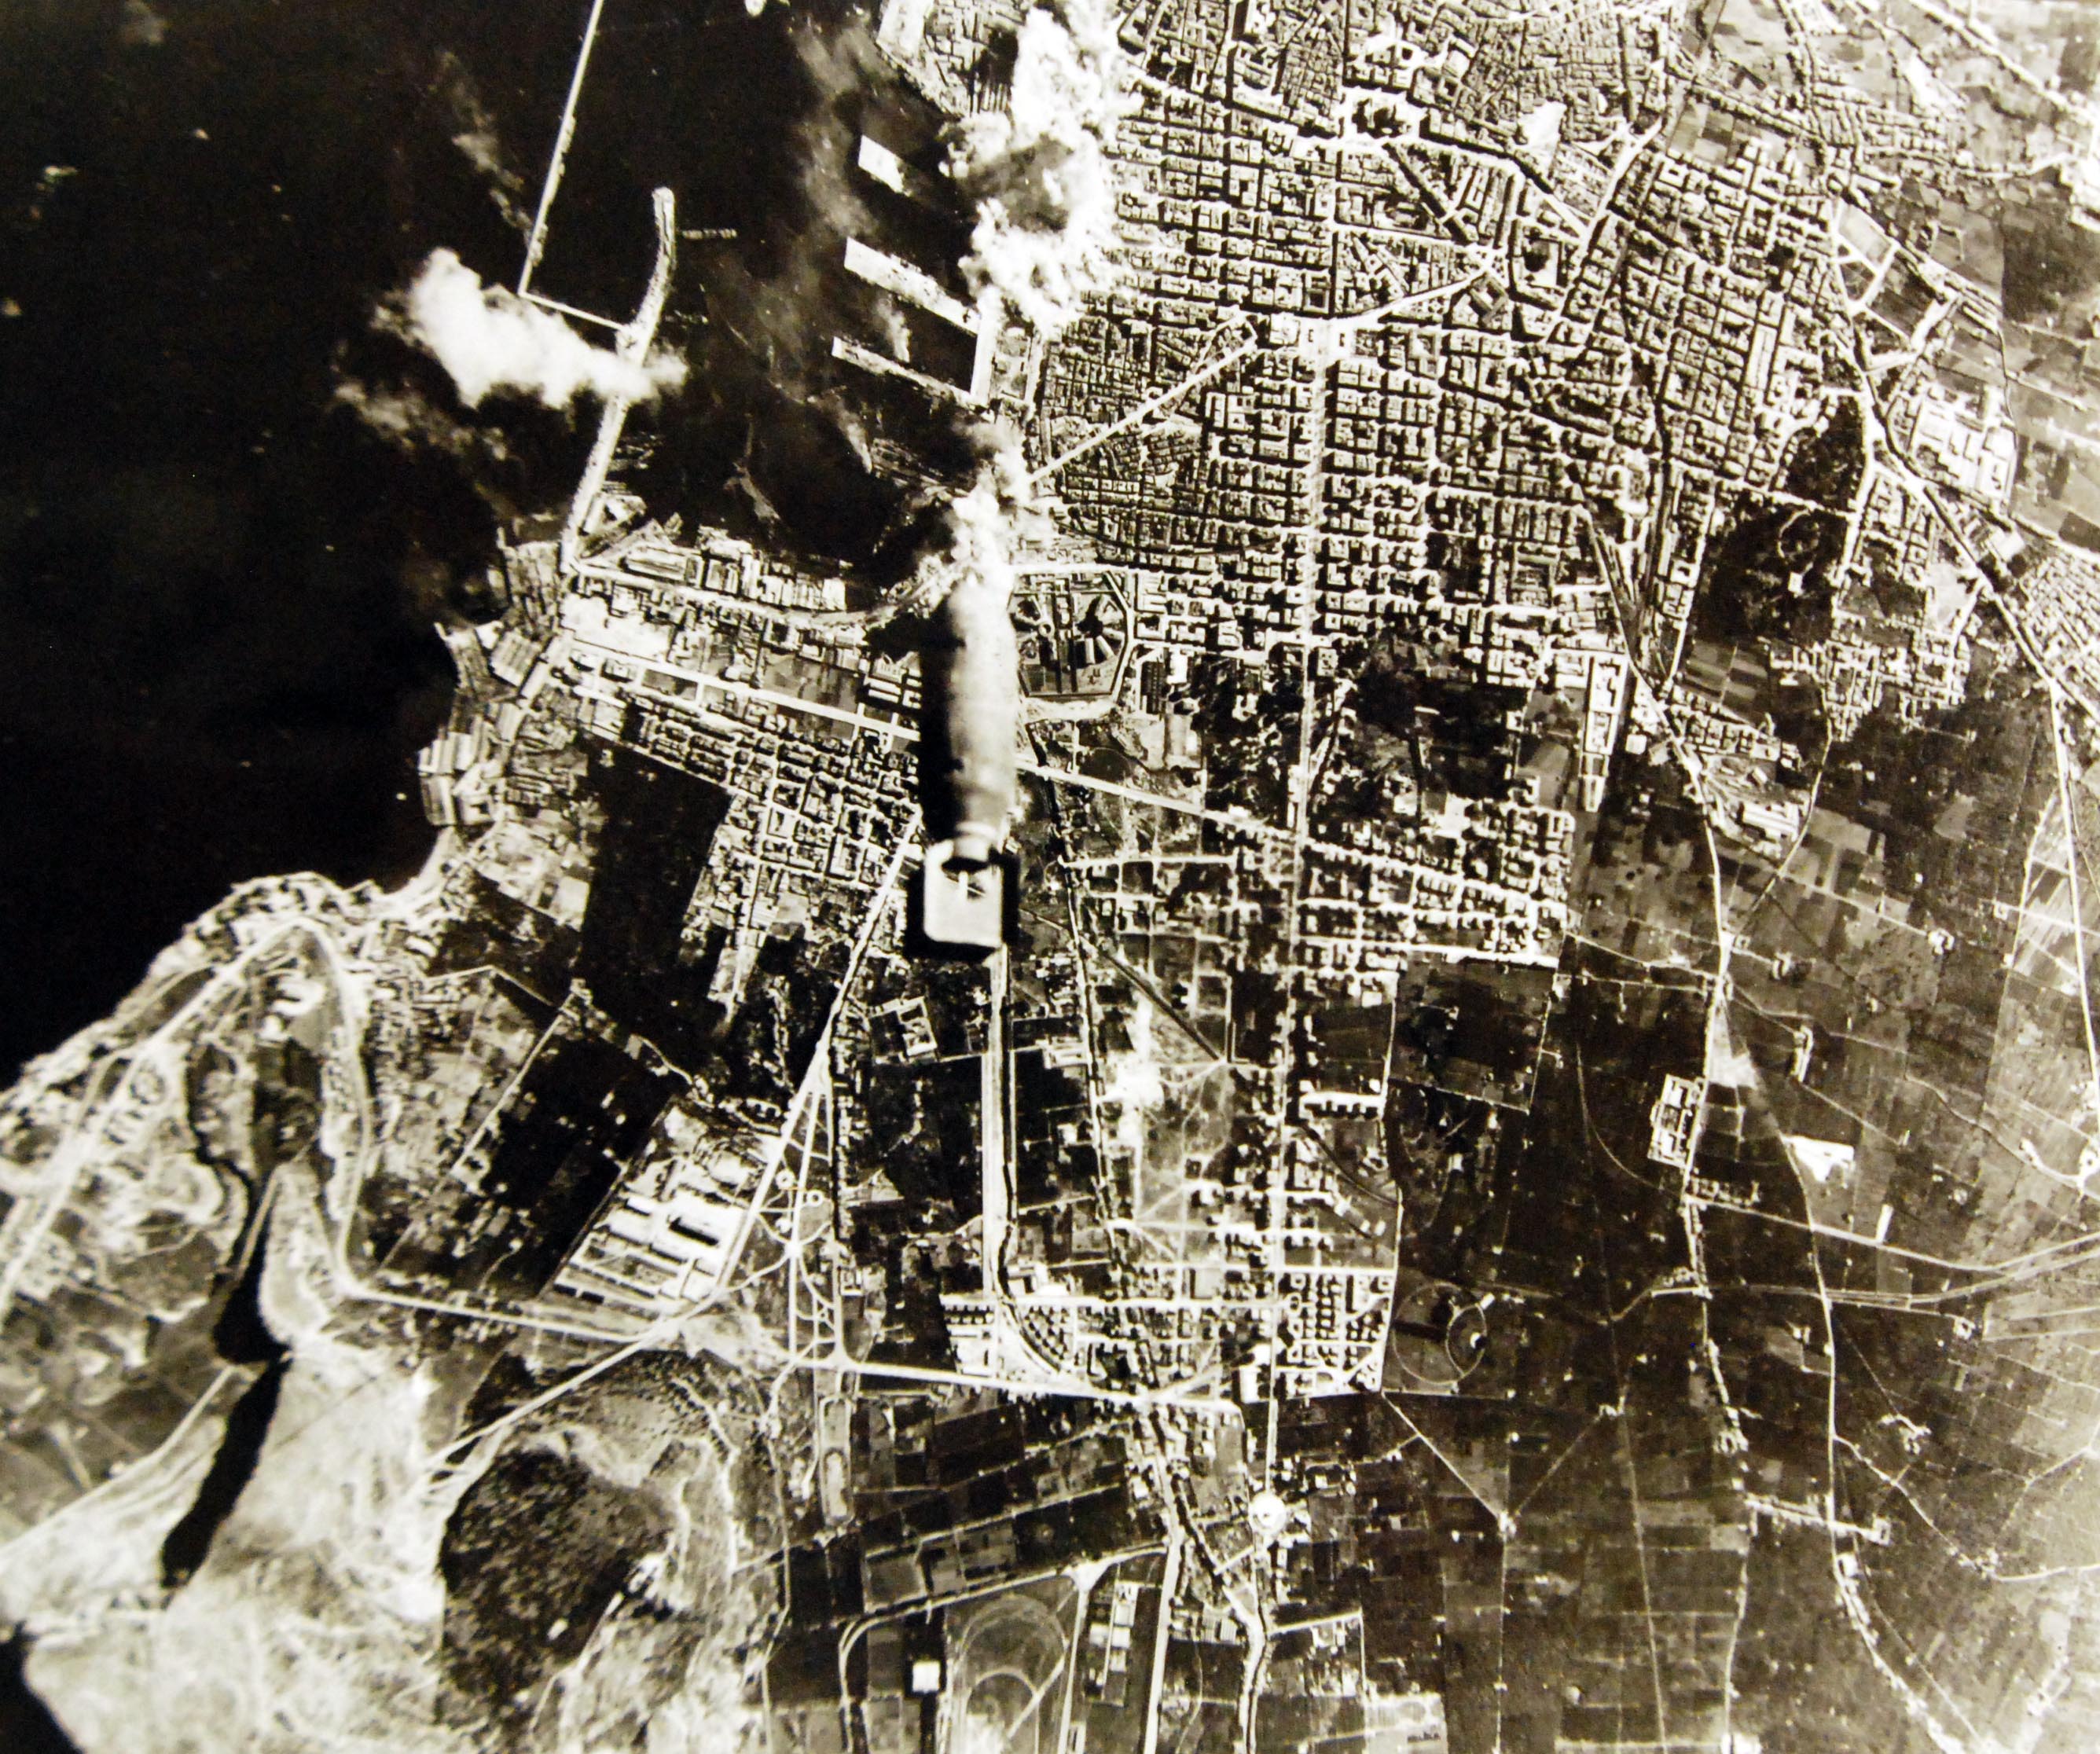 Le bombe cadono nella zona del porto- ripresa aerea da un bombardiere B-17 - Palermo, 1943
(National Museum of the U.S. Navy, Public domain, via Wikimedia Commons)